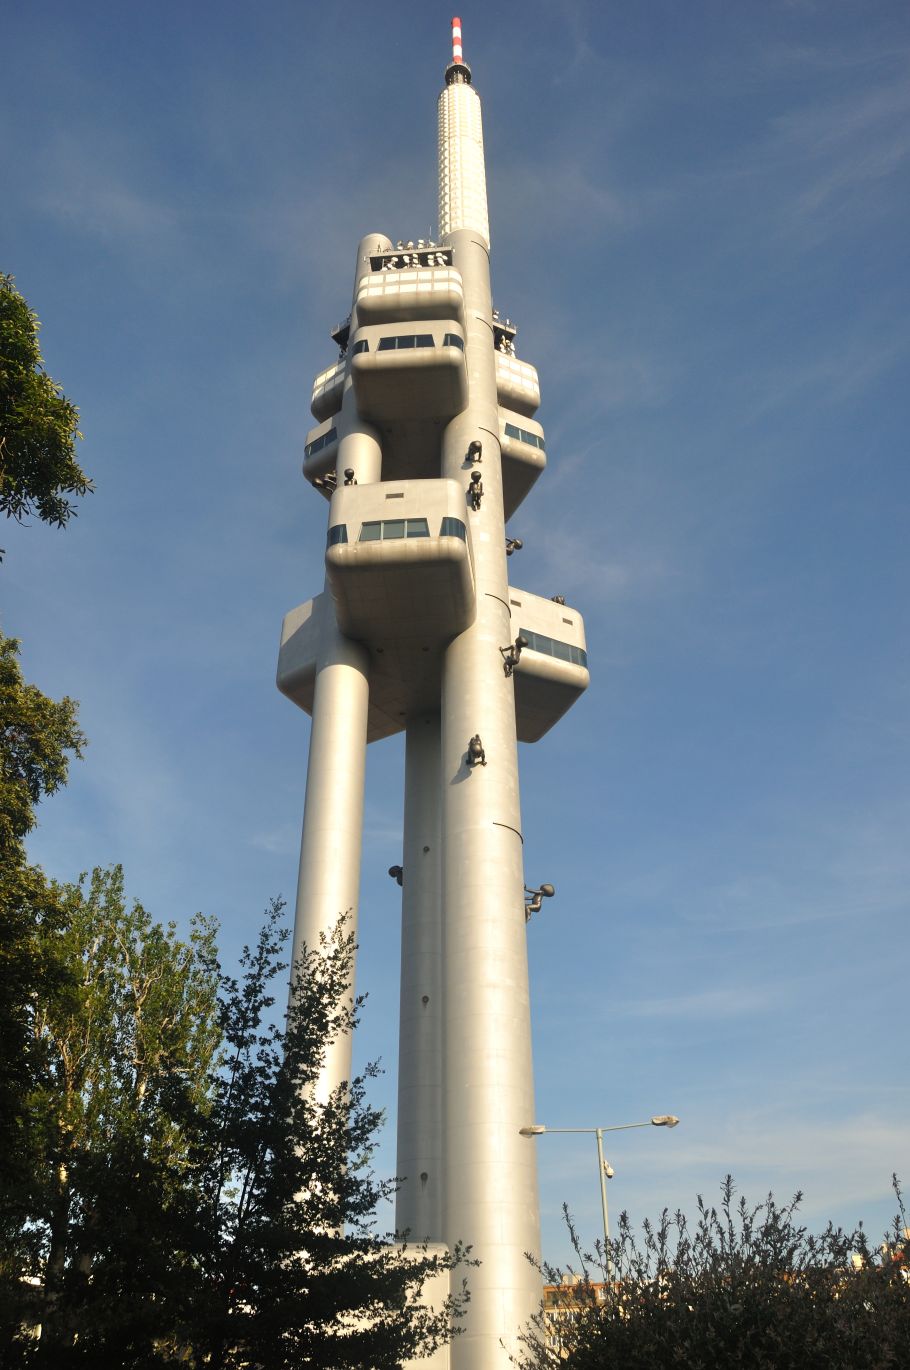 Zdjęcie wieży telewizyjnej w Pradze, trzy wielkie metalowe tuby pną się w niebo.